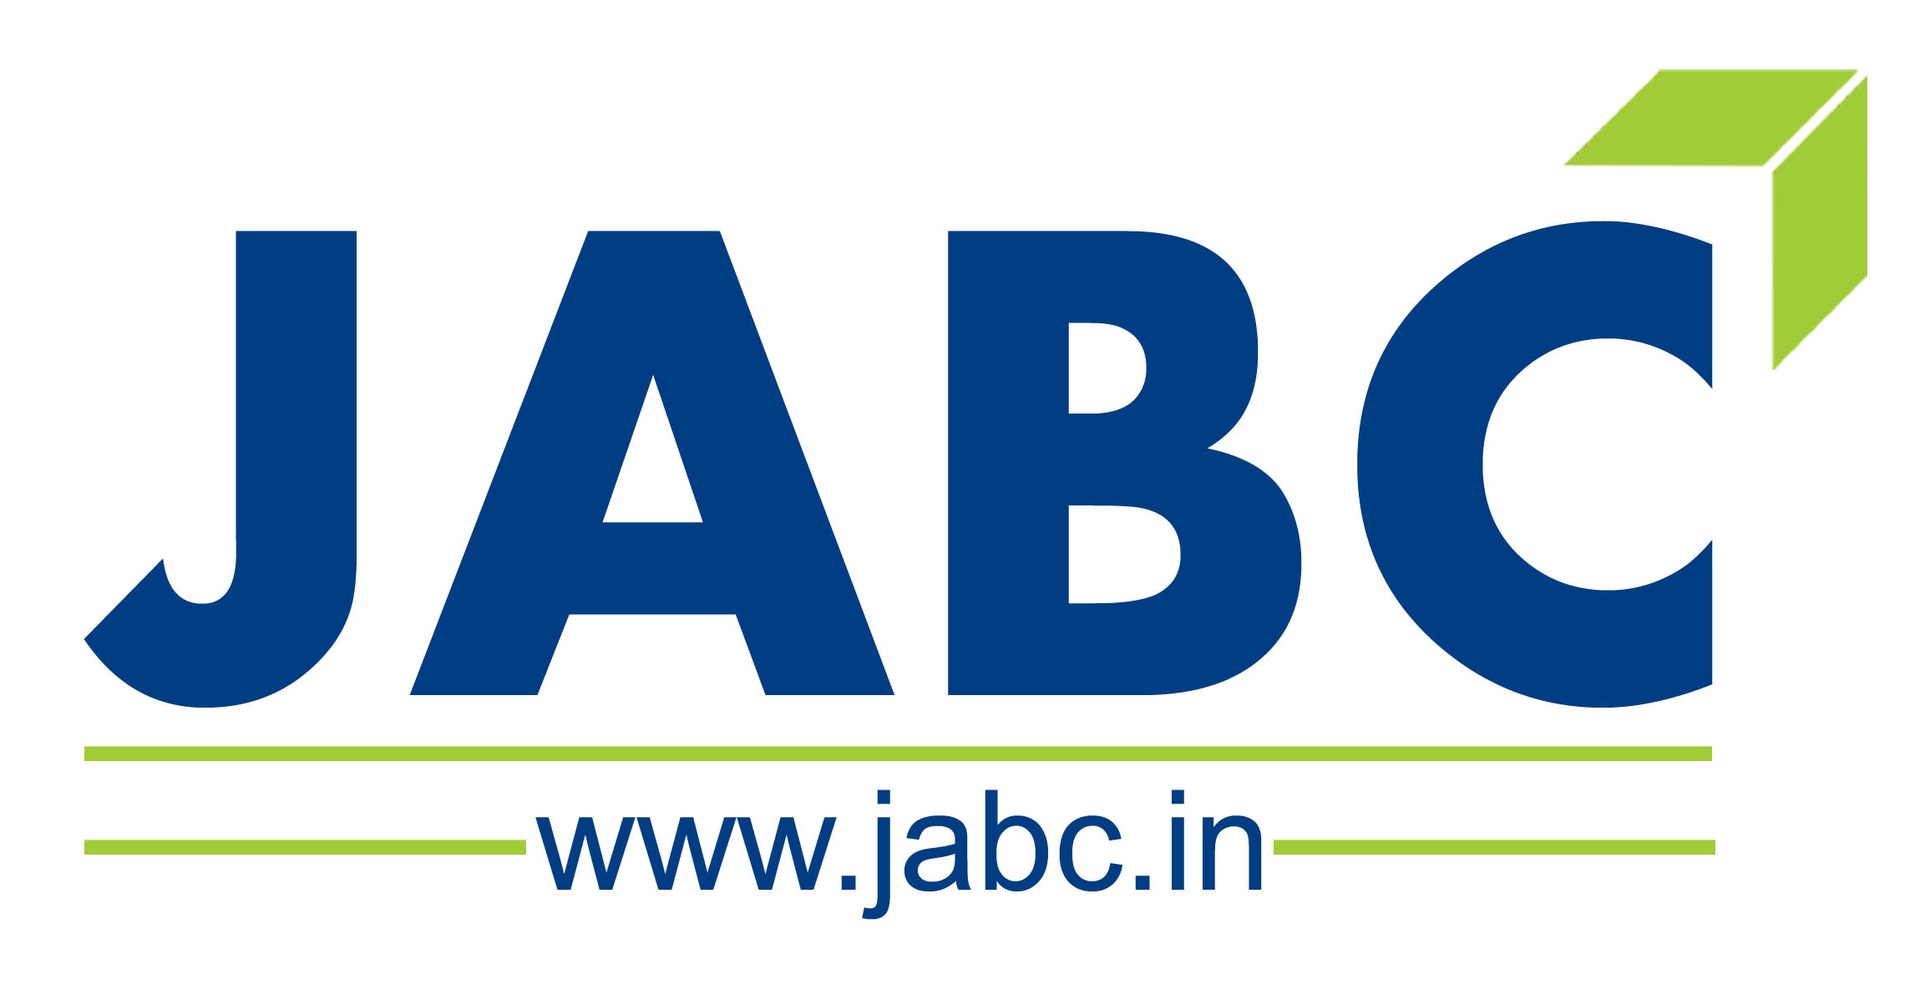 JABC Business Consultancy Pvt Ltd